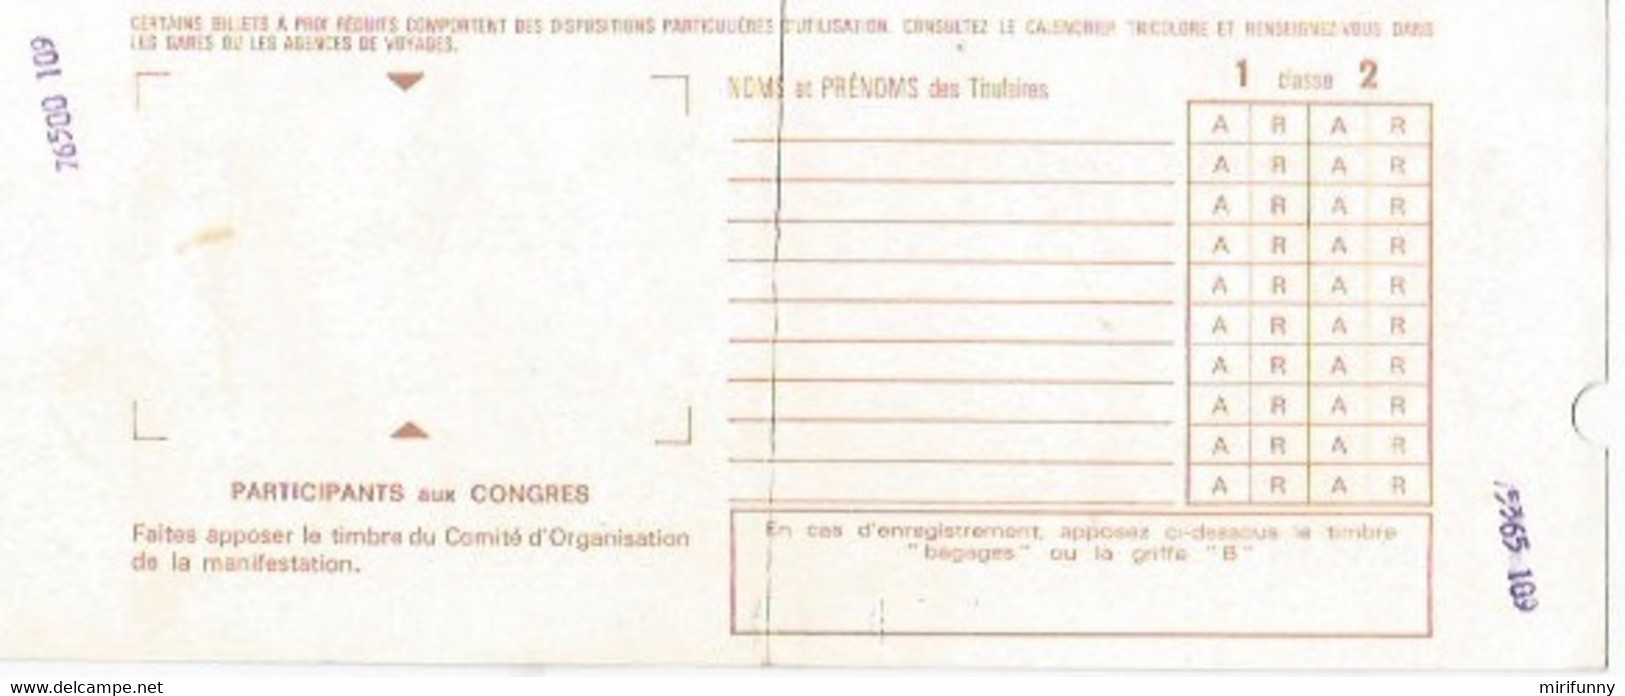 SNCF/BILLET ARLES-AVIGNON/VIA TARASCON/19.04.1983 - Non Classés